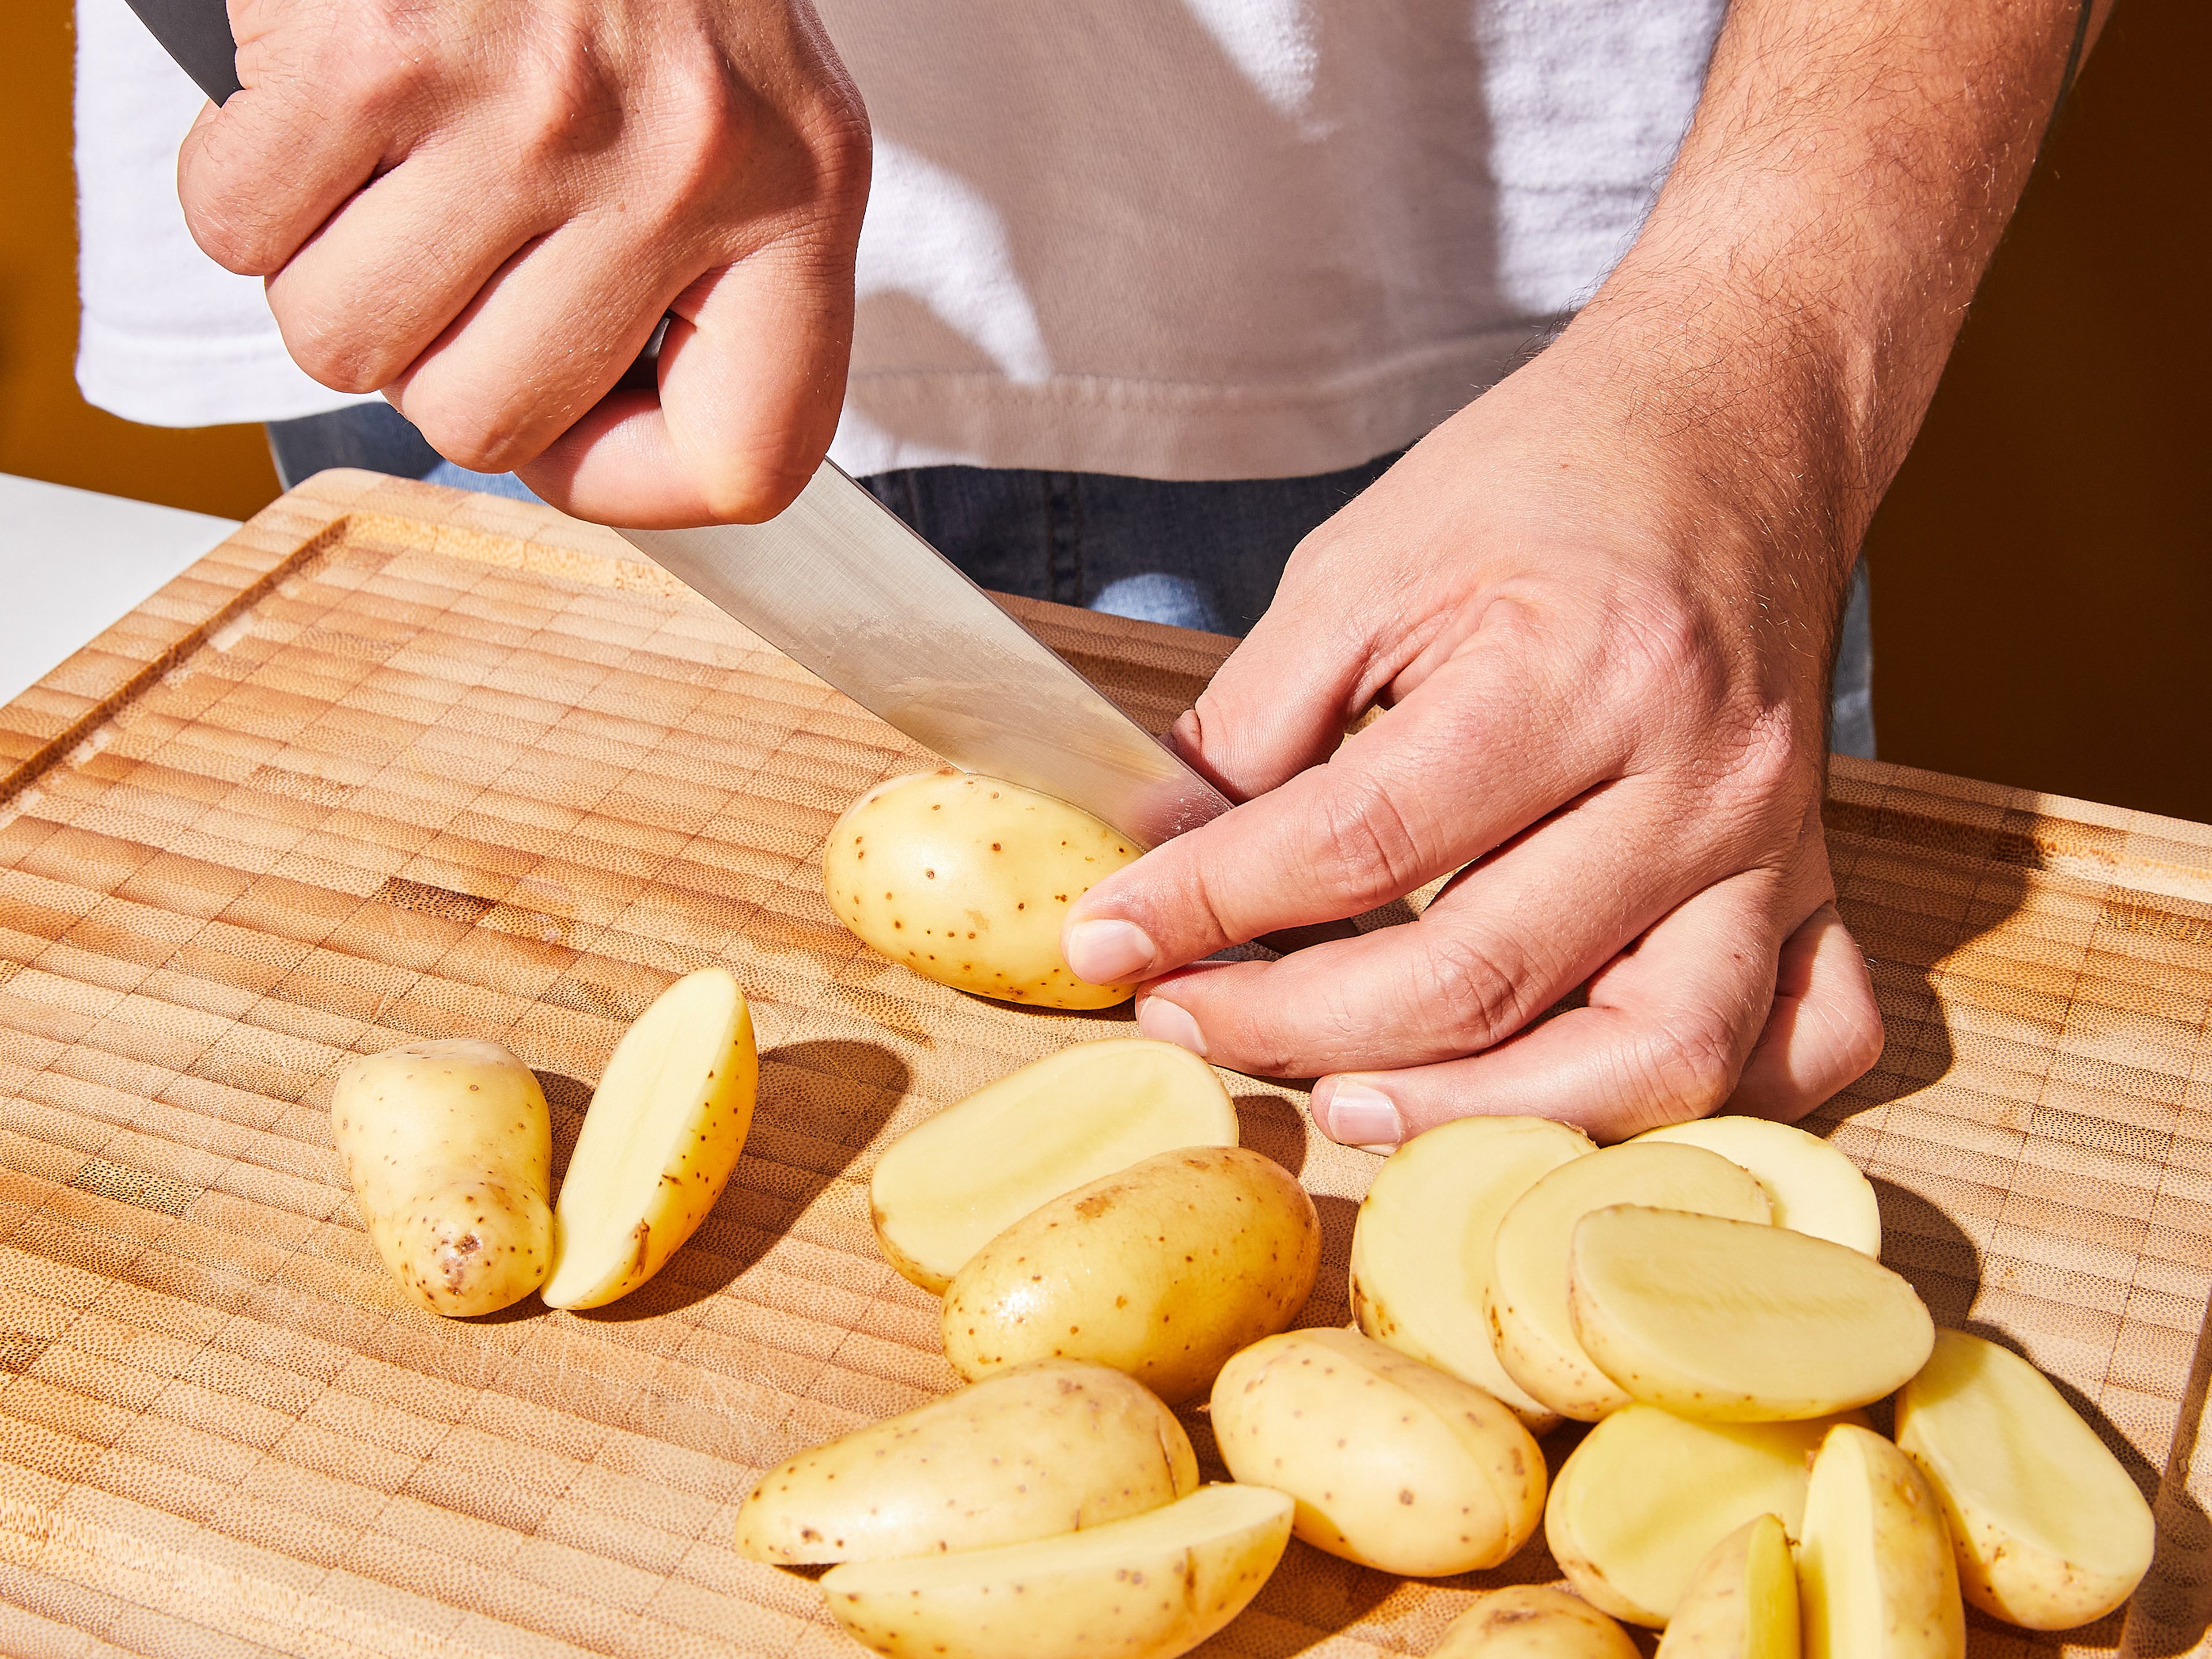 Kartoffeln halbieren oder vierteln, falls du große Kartoffeln hast. In einen großen Topf mit gesalzenem Wasser bei Raumtemperatur geben und zum Kochen bringen. Sobald die Kartoffeln kochen, Temperatur reduzieren und ca. 10 Min. köcheln, oder bis sie gar sind. Kartoffeln dann abgießen und im Topf ruhen lassen, bis das Wasser verdampft ist.